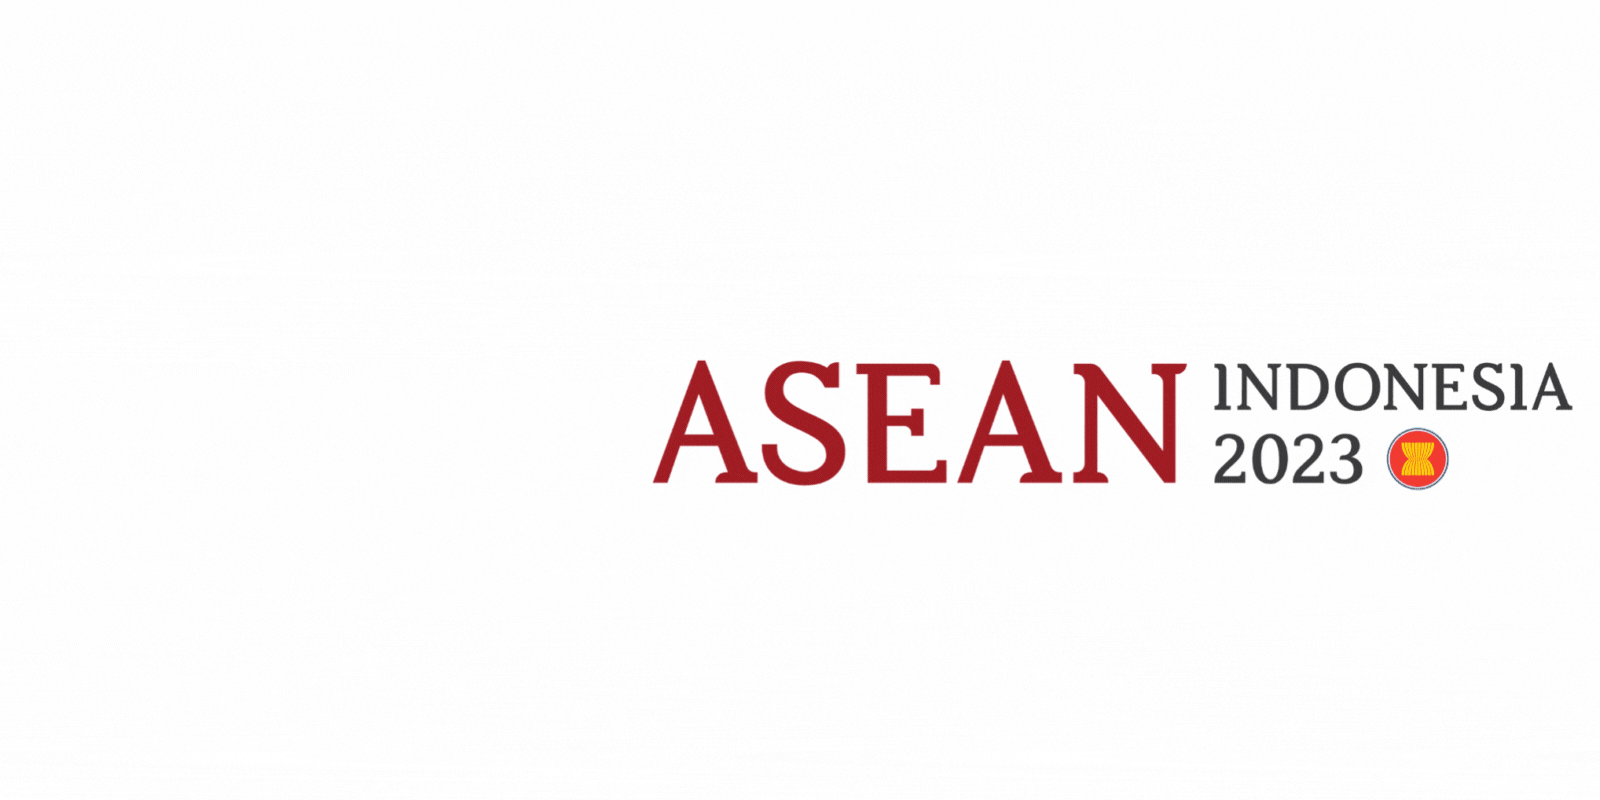 ASEAN Chairmanship 2023